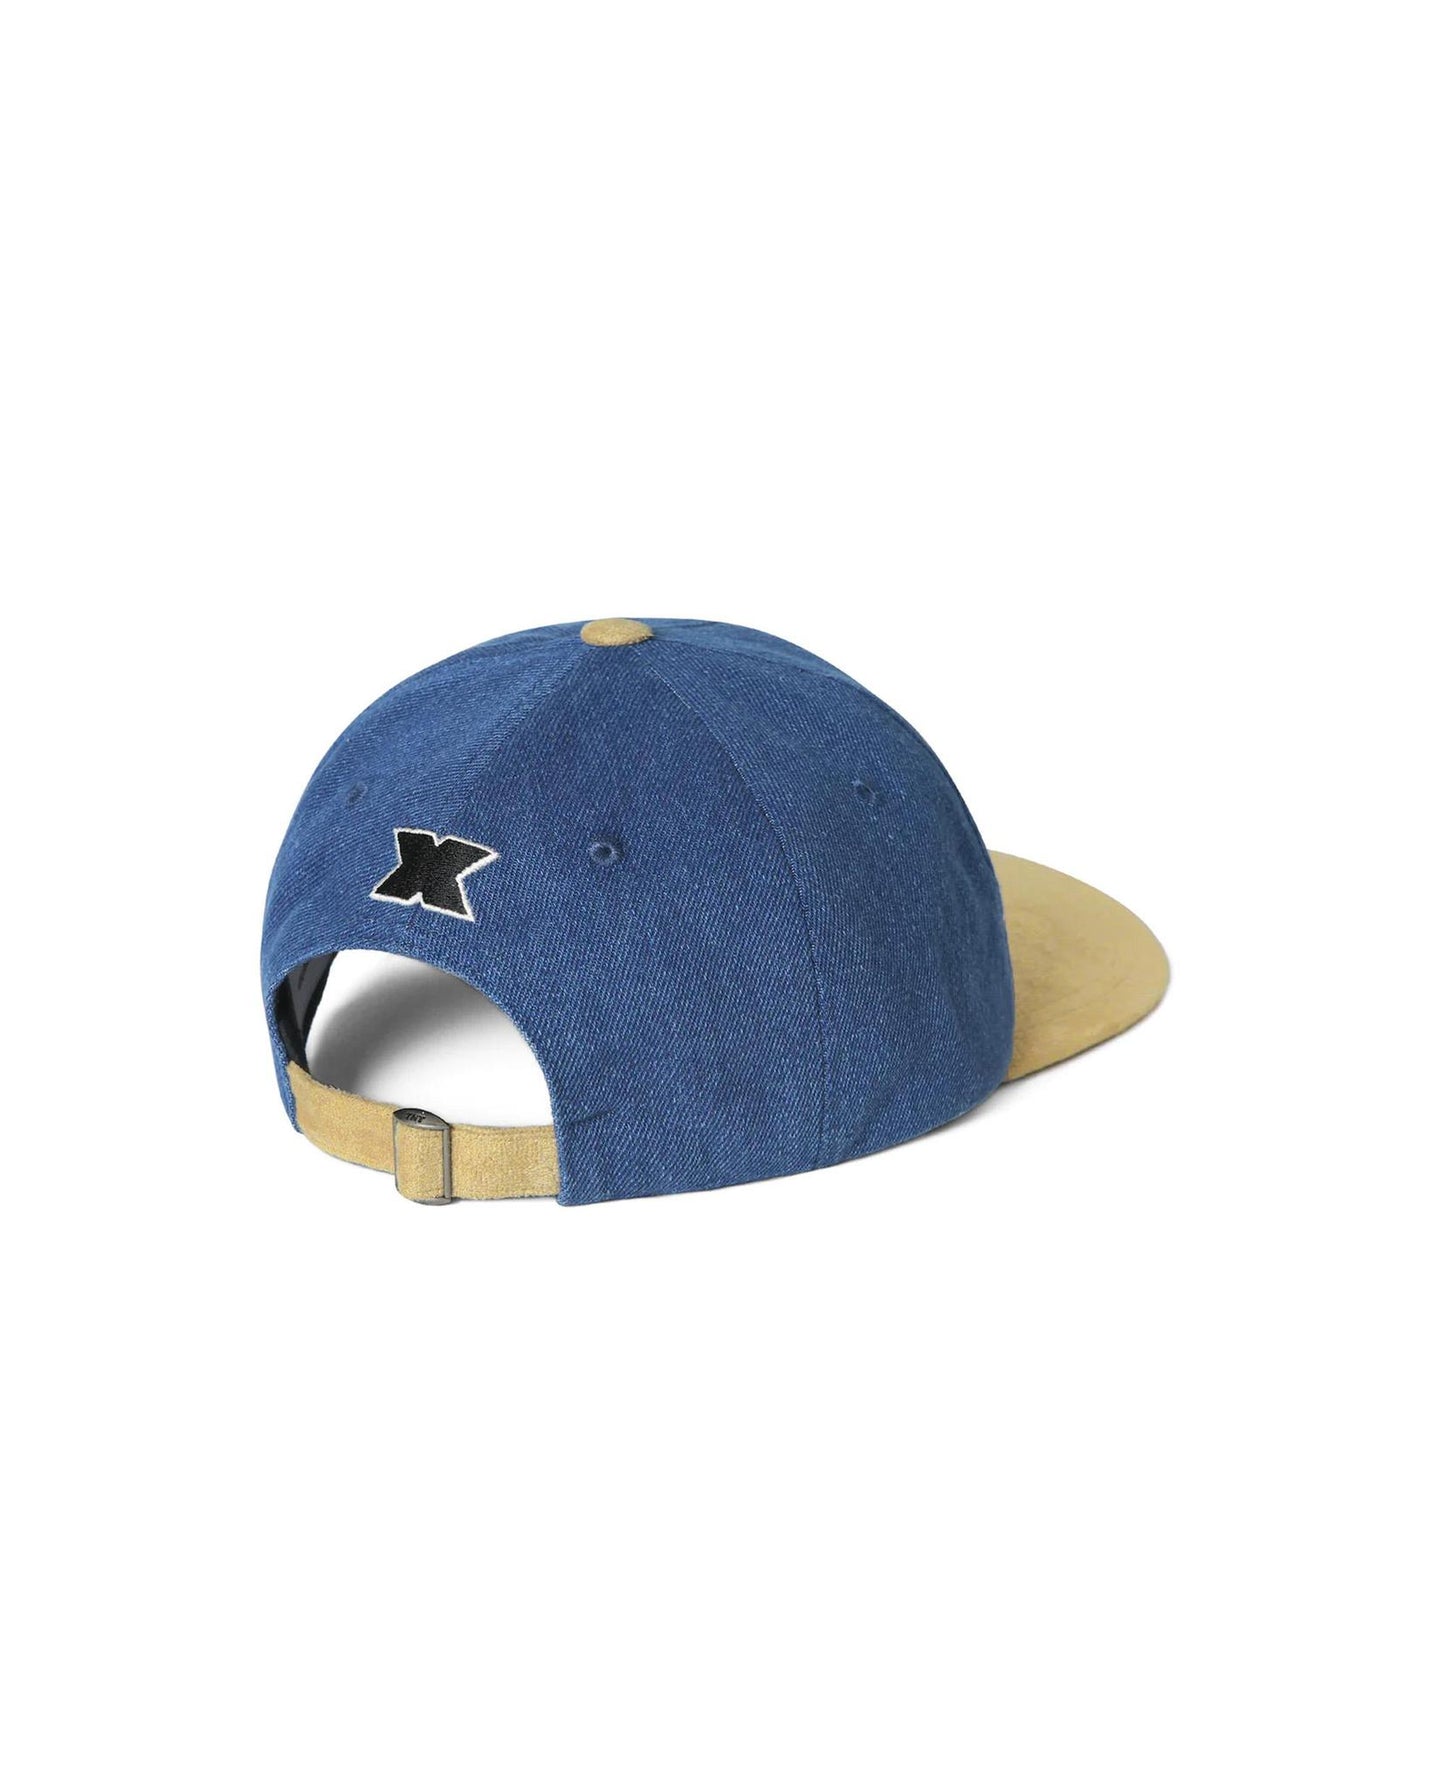 Yankees cap, Ralph Lauren cap, navy blue color cap